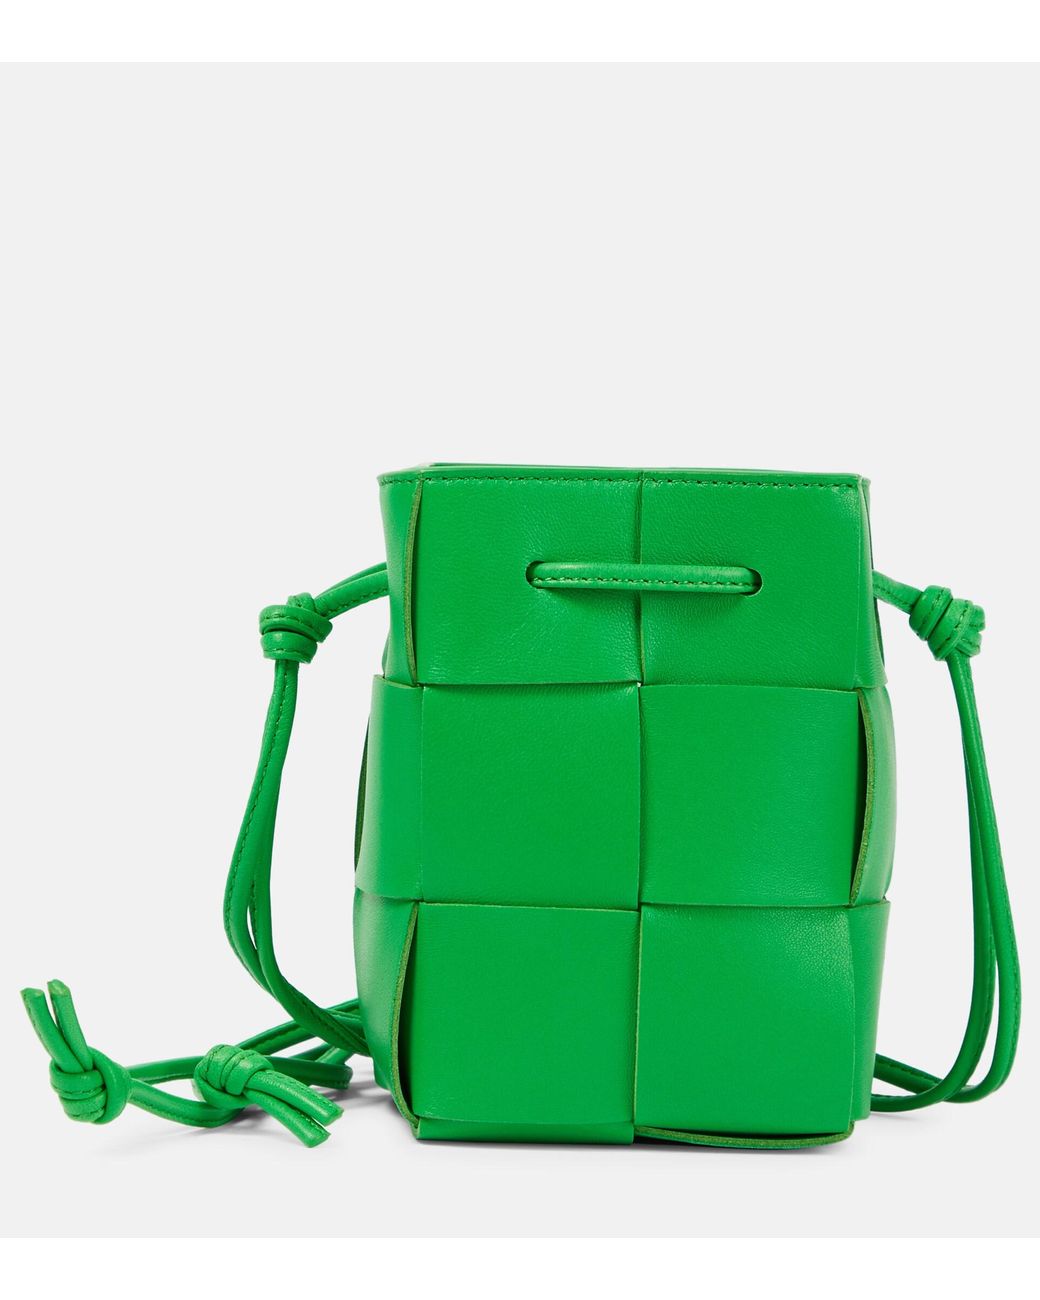 Bottega Veneta Cassette Mini Leather Bucket Bag in Green | Lyst